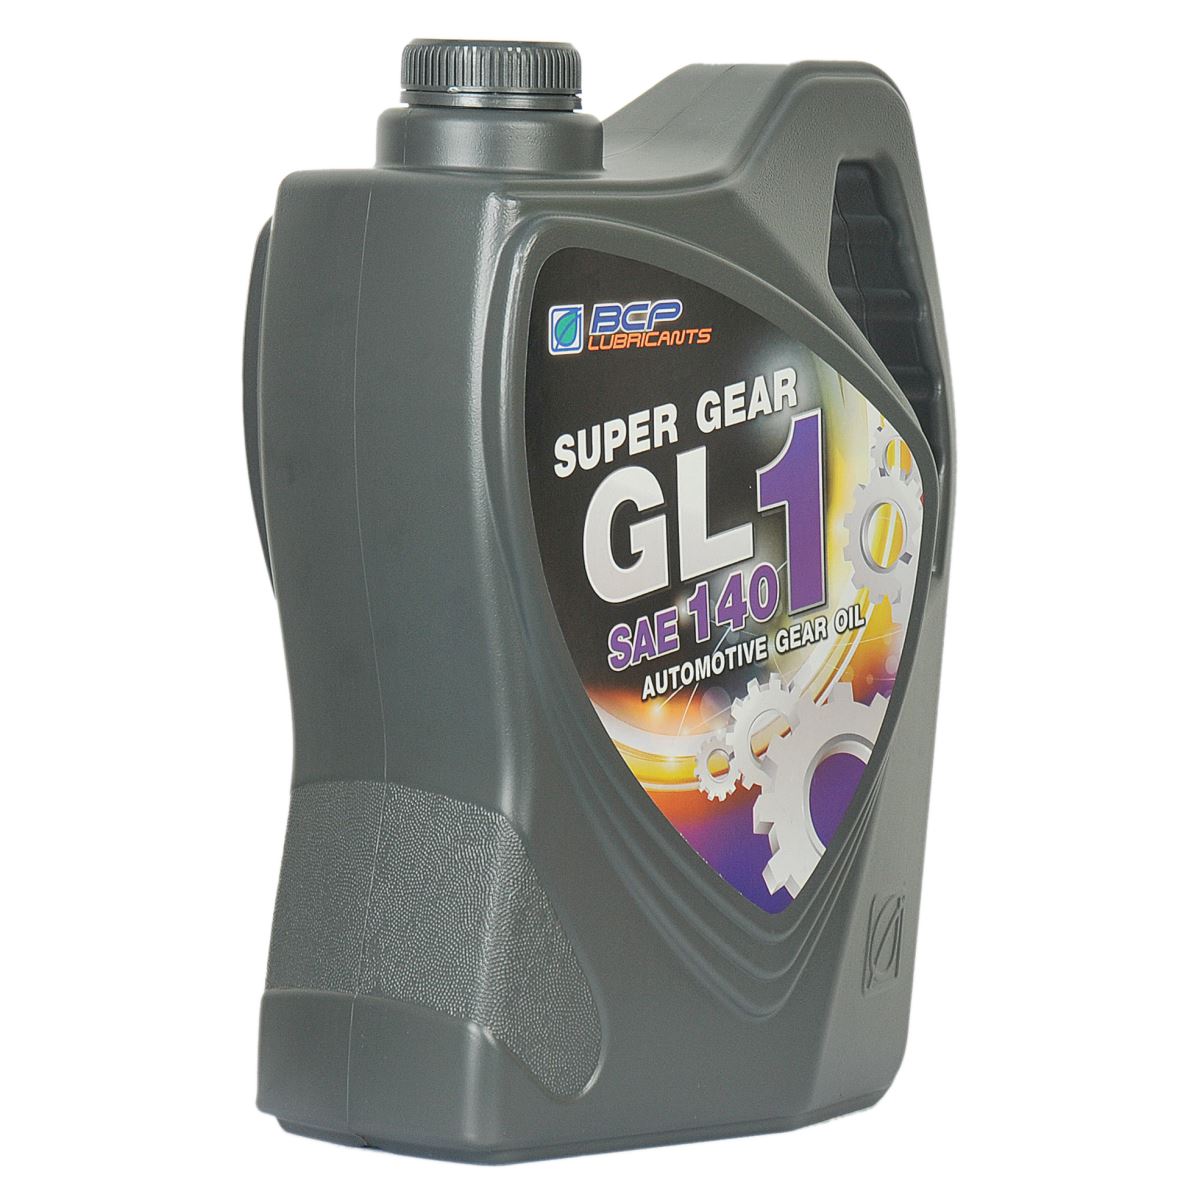 Super Gear GL 1